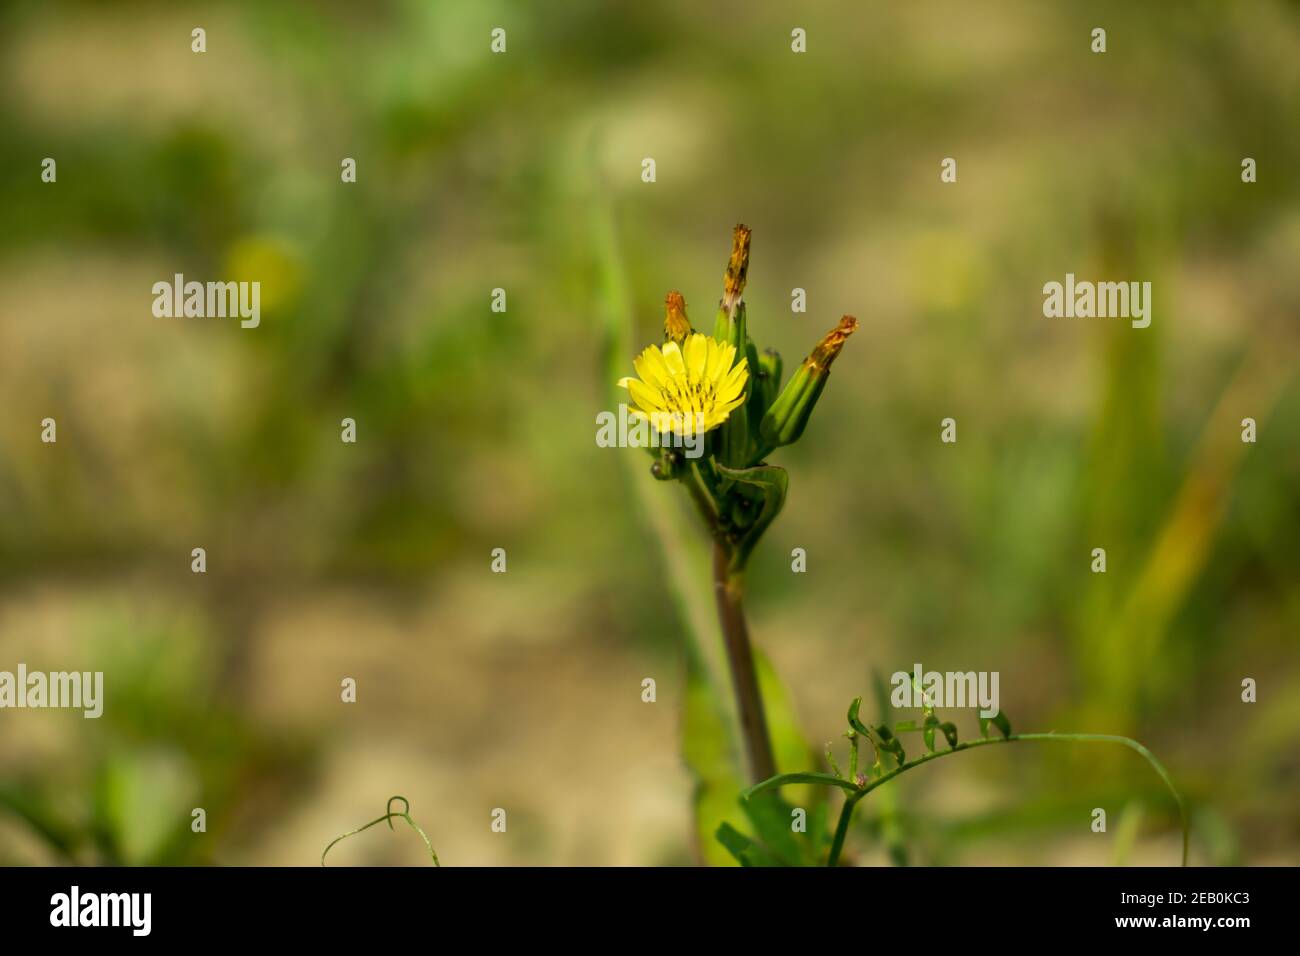 Small-flower hawk's-beard r closeup shot of blooming yellow Carolina desert-chicory flowers with greenery bg Stock Photo